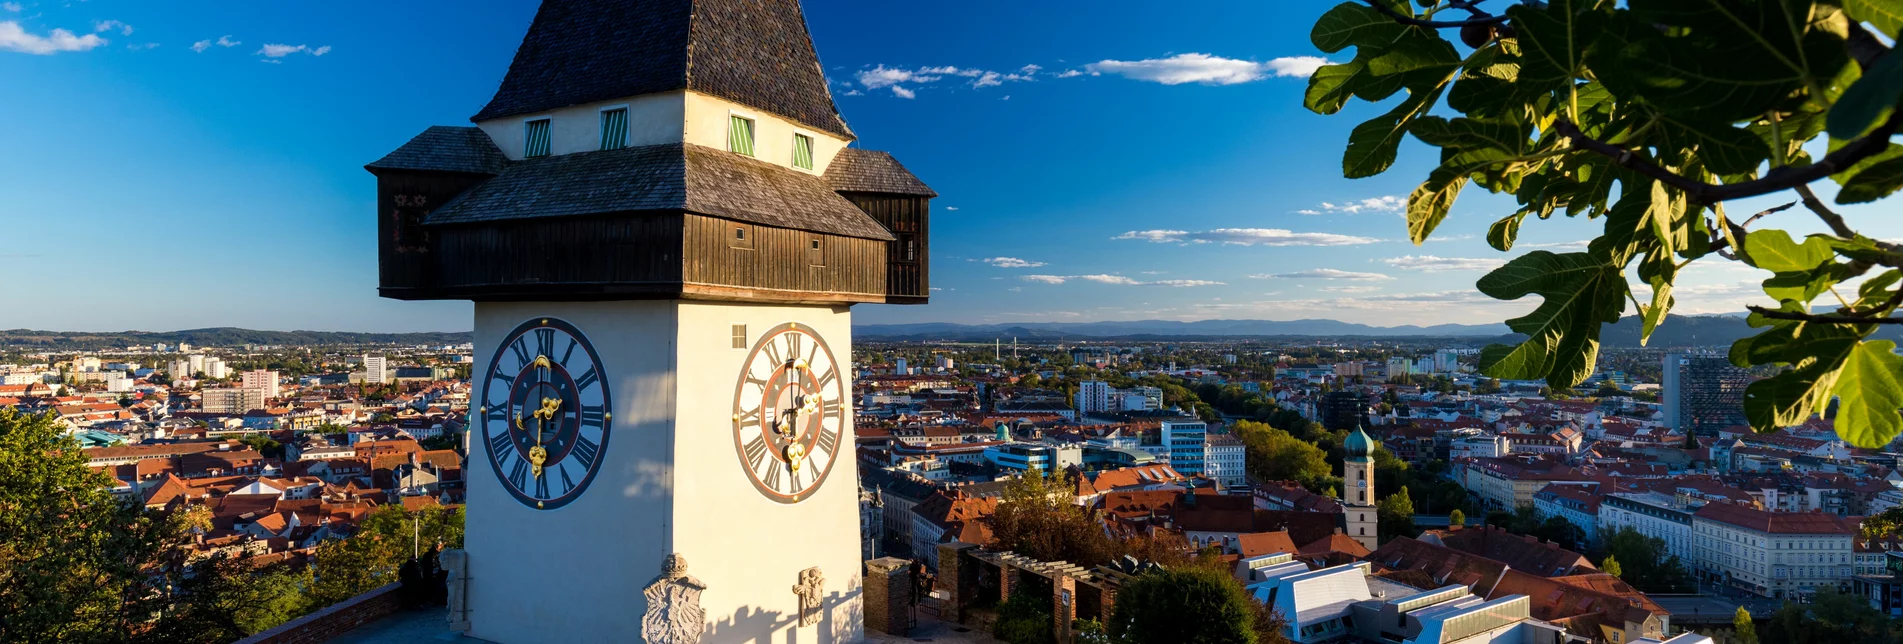 Blick vom Schlossberg mit dem Uhrturm im Vordergrund auf die Dächer von Graz | © Graz Tourismus